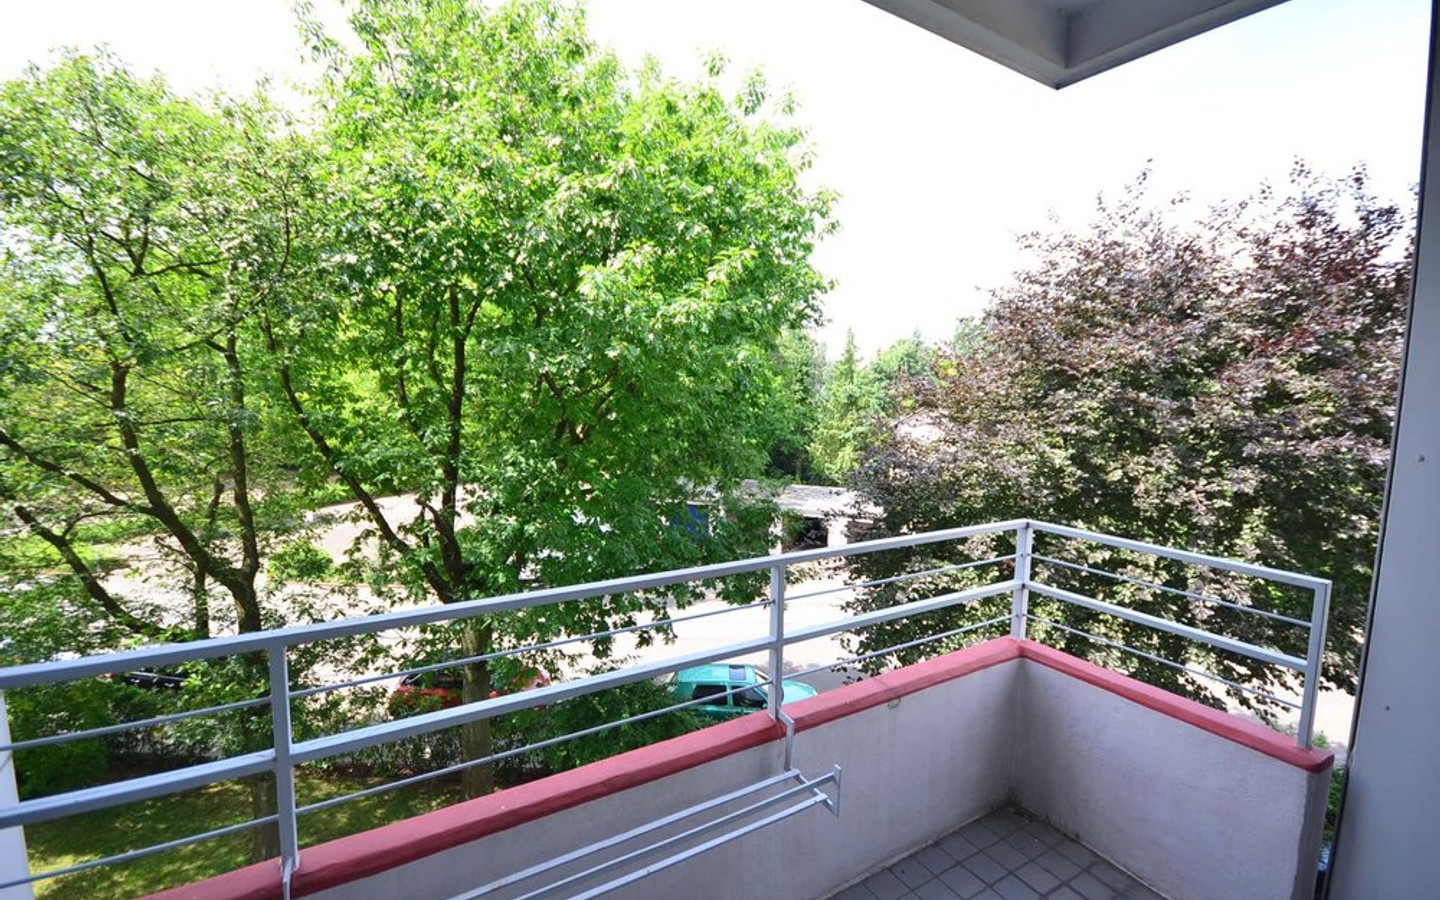 Balkon - Heidelberg-Wieblingen: 2-Zimmerwohnung mit Balkon und gelungener Raumaufteilung